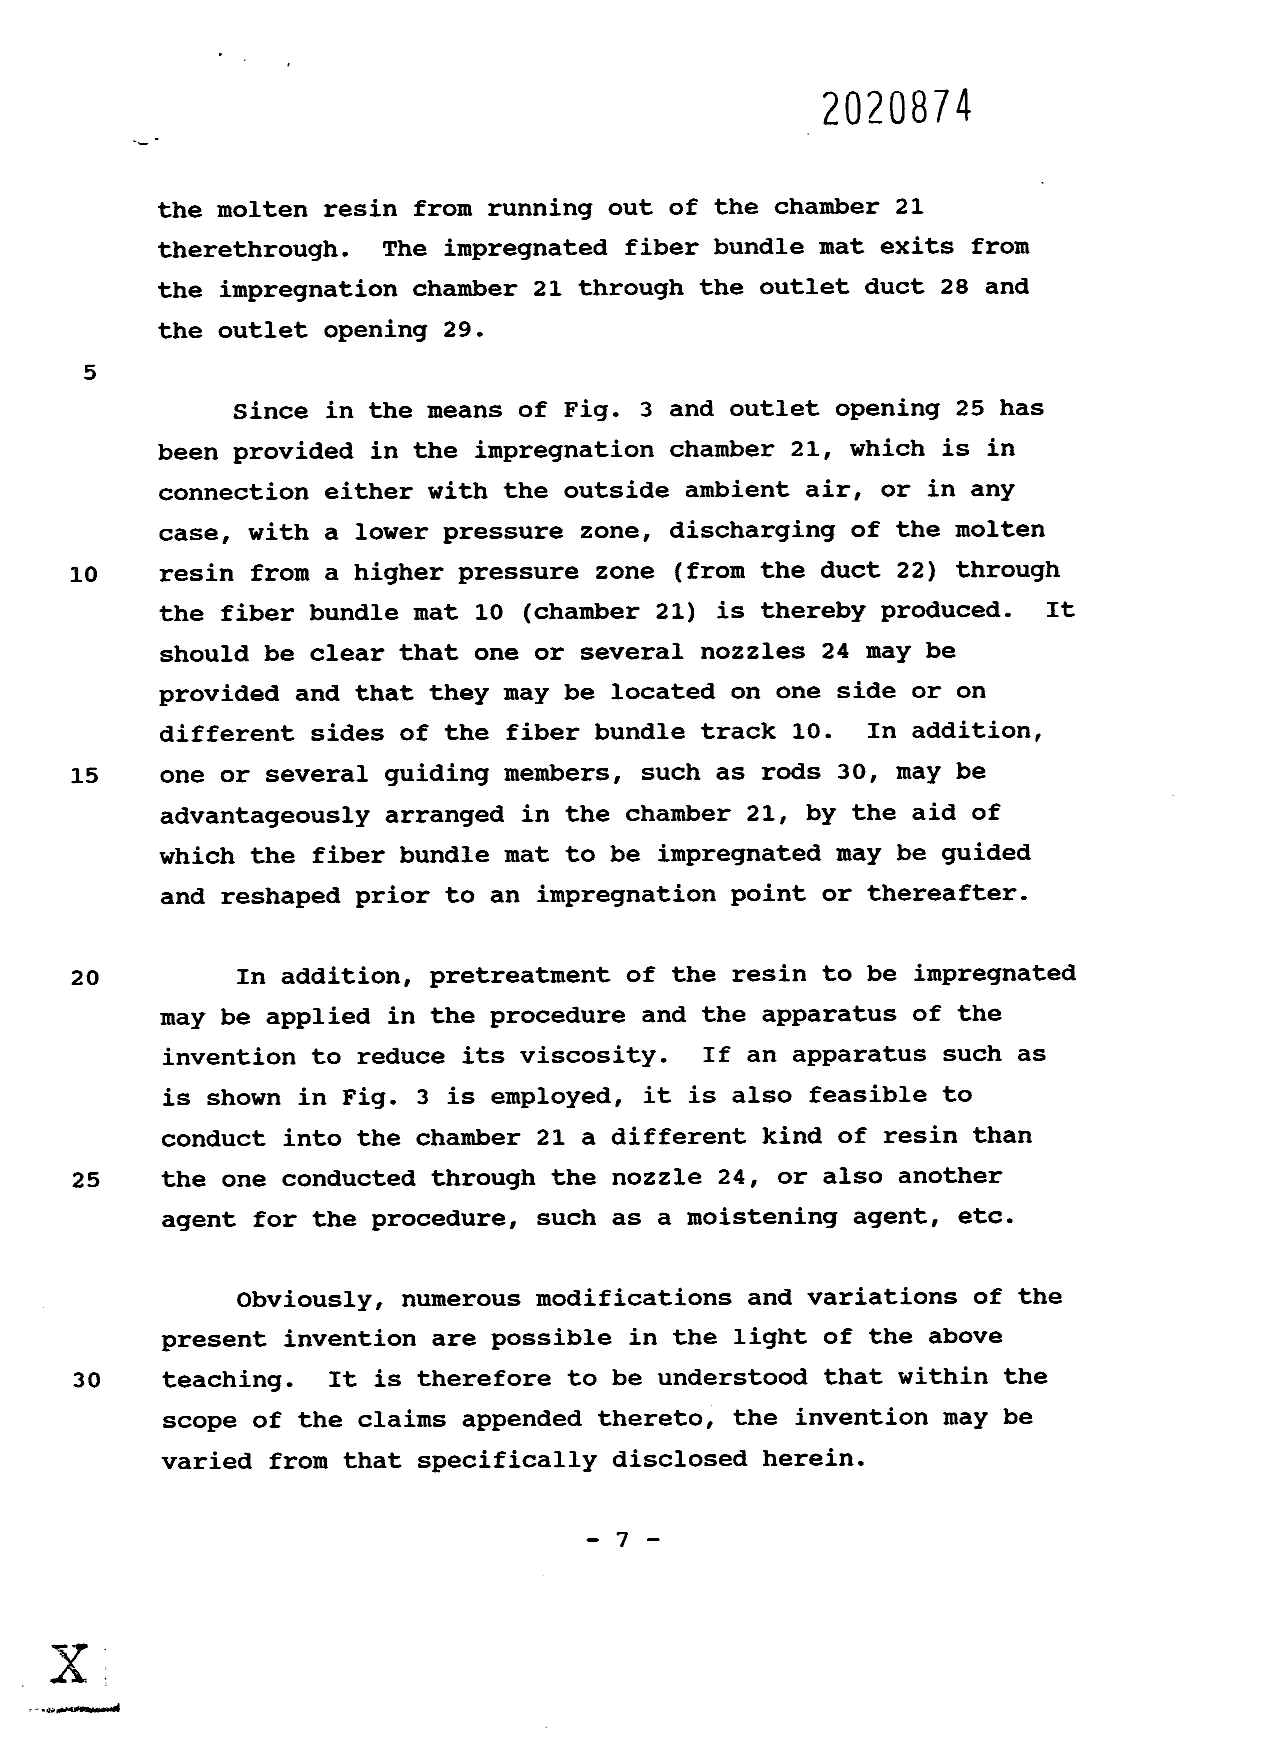 Canadian Patent Document 2020874. Description 19931216. Image 7 of 7